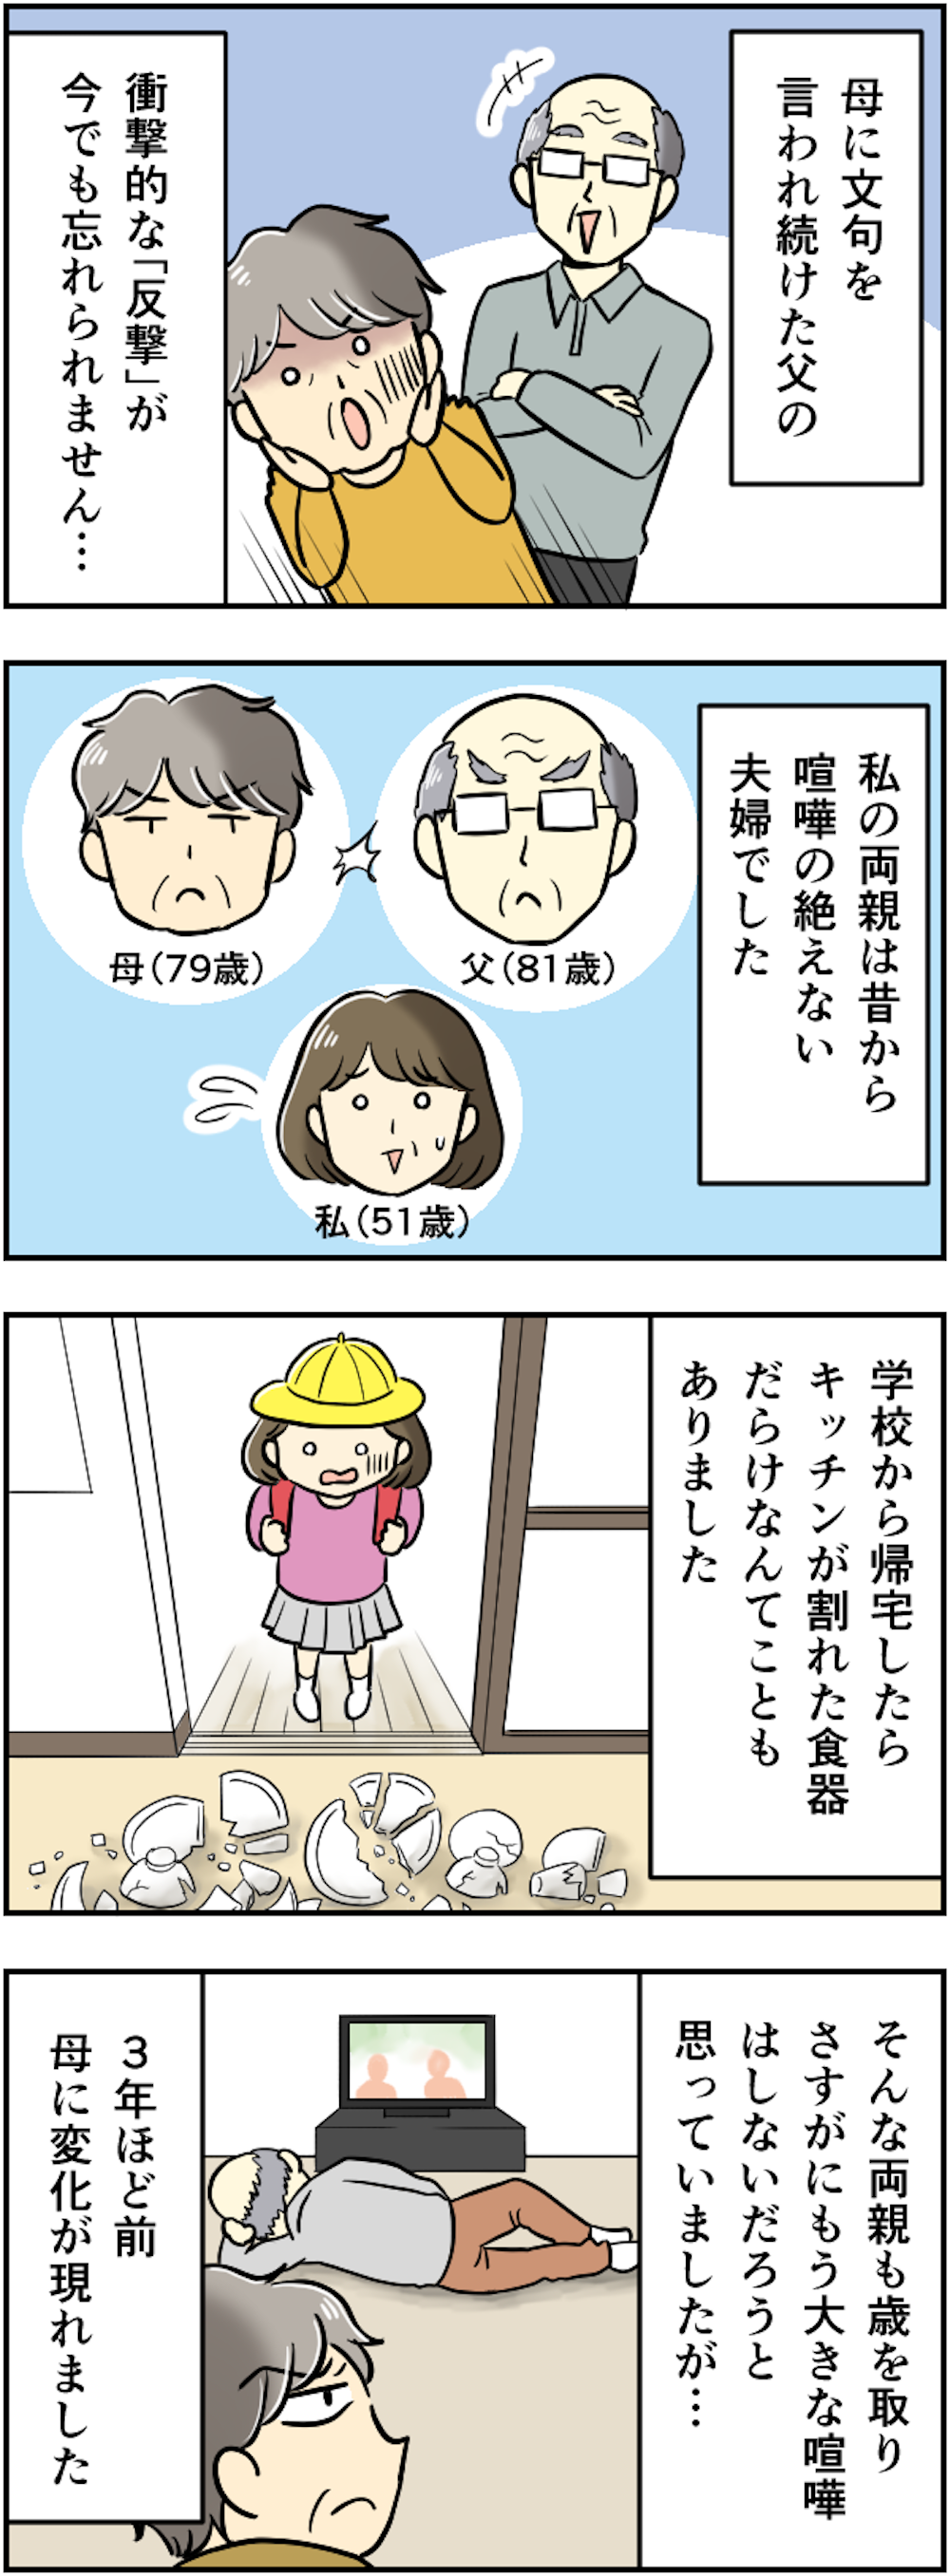 「ホントどうしょうもない」両親が夫婦喧嘩をこじらせて...ついに起きた「庭木伐採事件」に驚愕【漫画】 209kansei_001.png